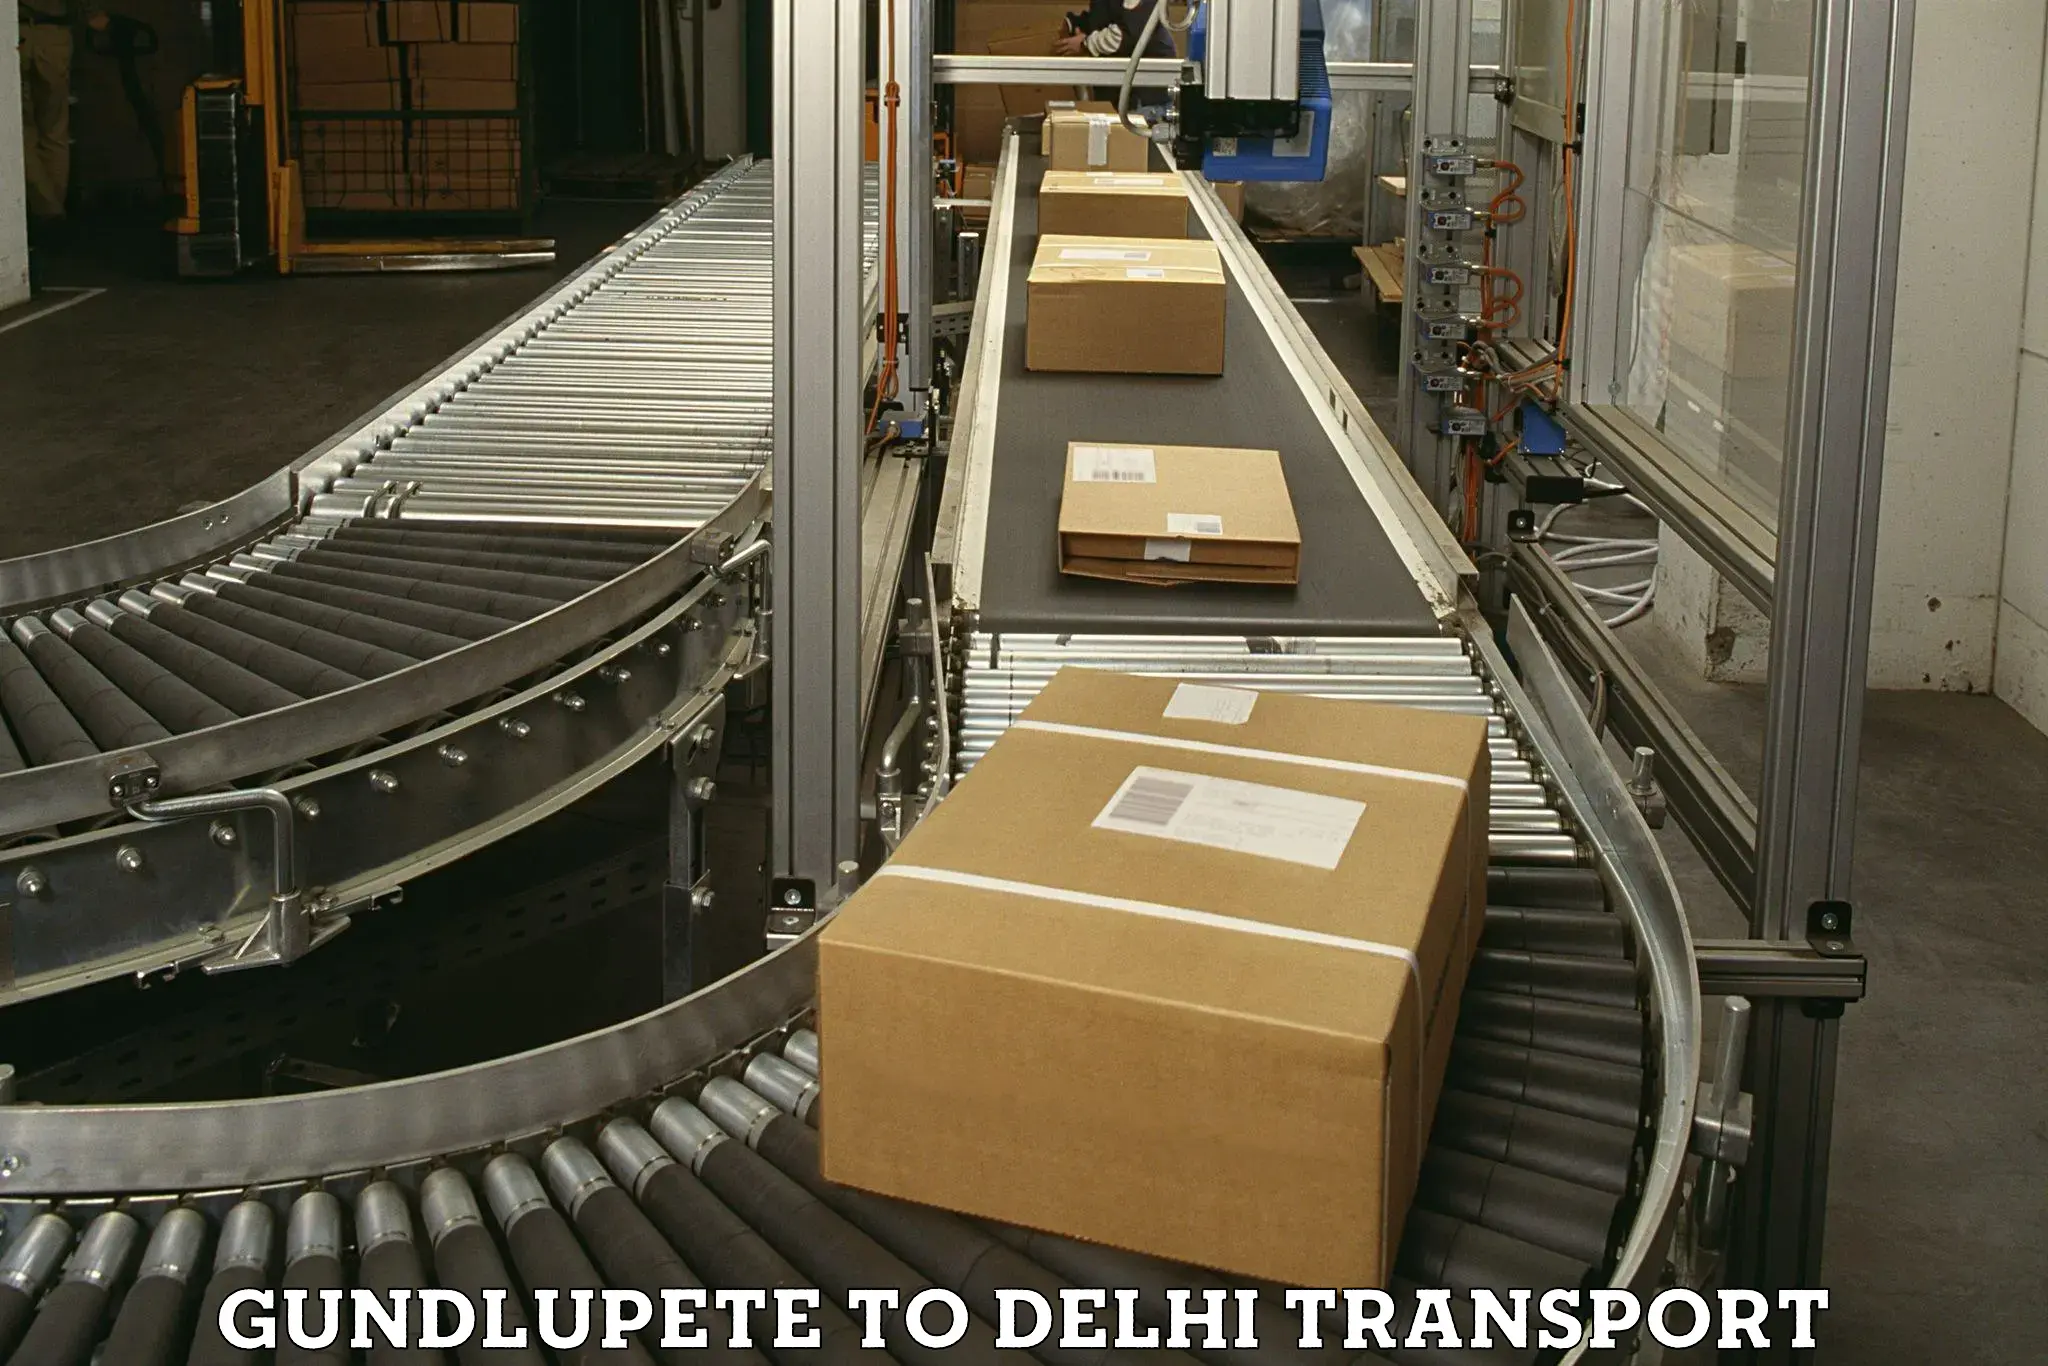 Cargo transport services Gundlupete to NIT Delhi